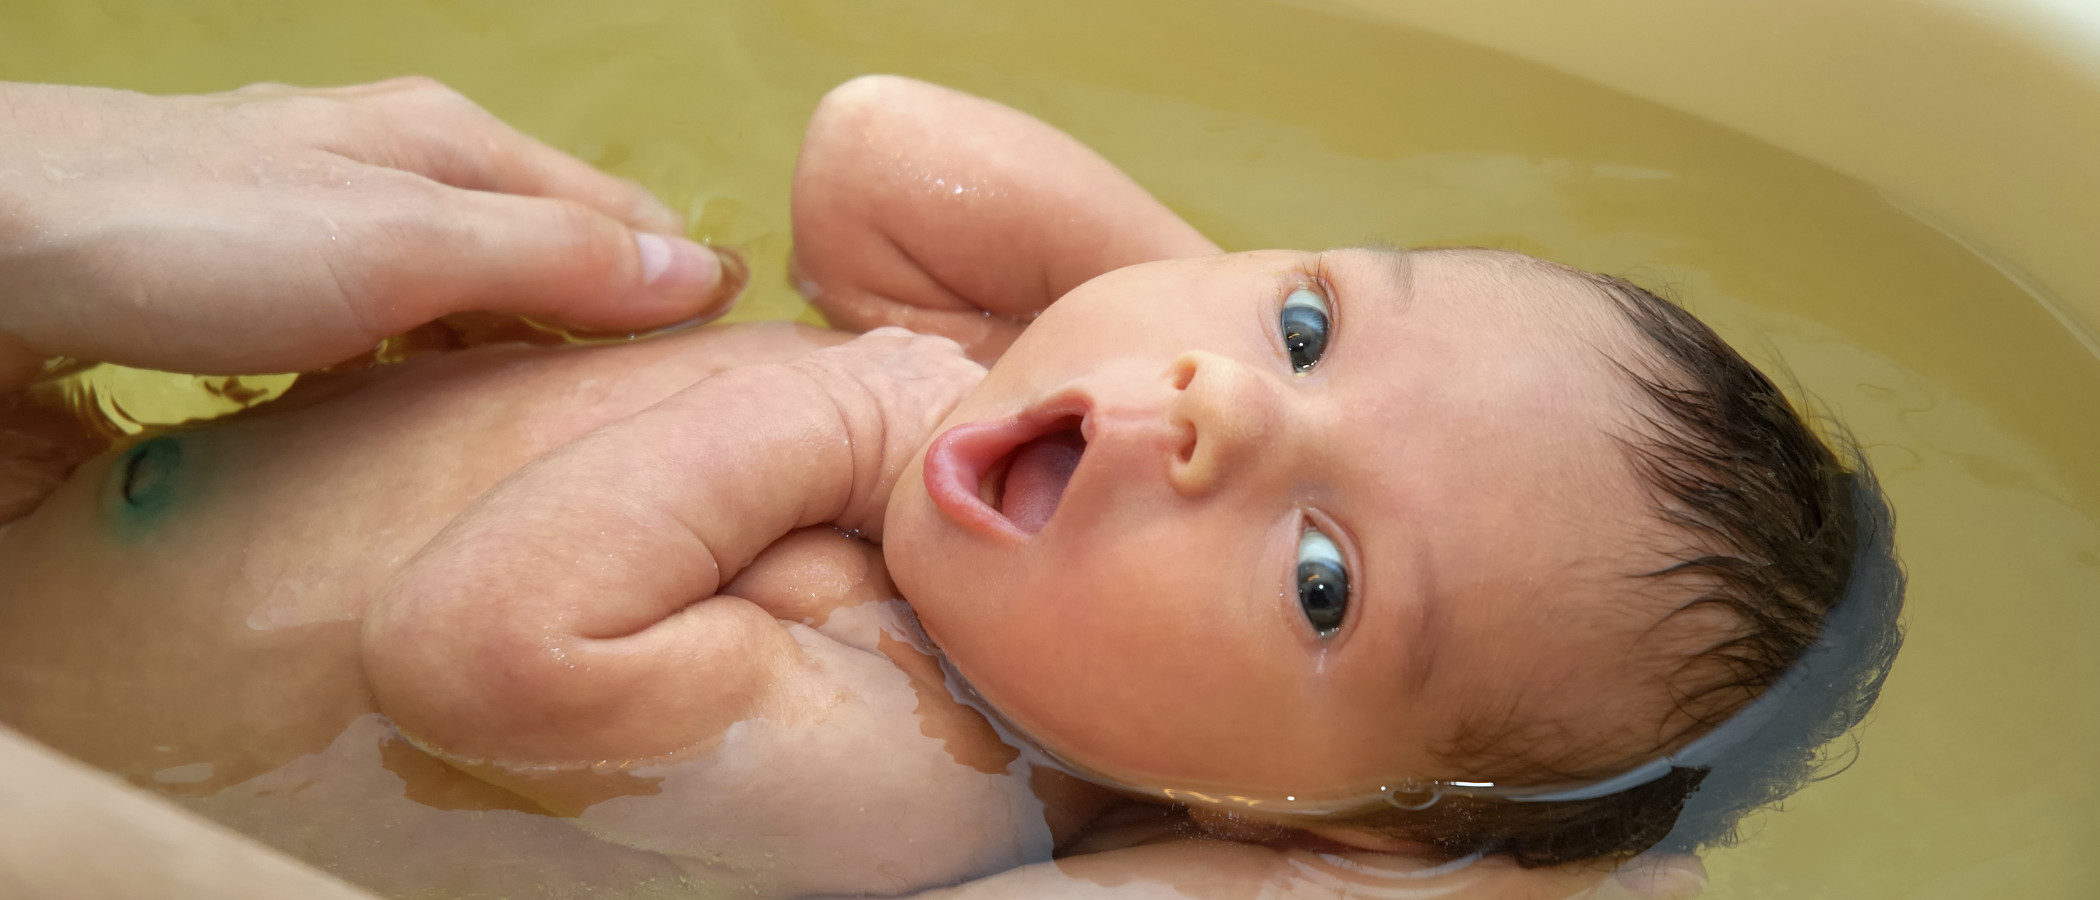 Cómo bañar a un recién nacido